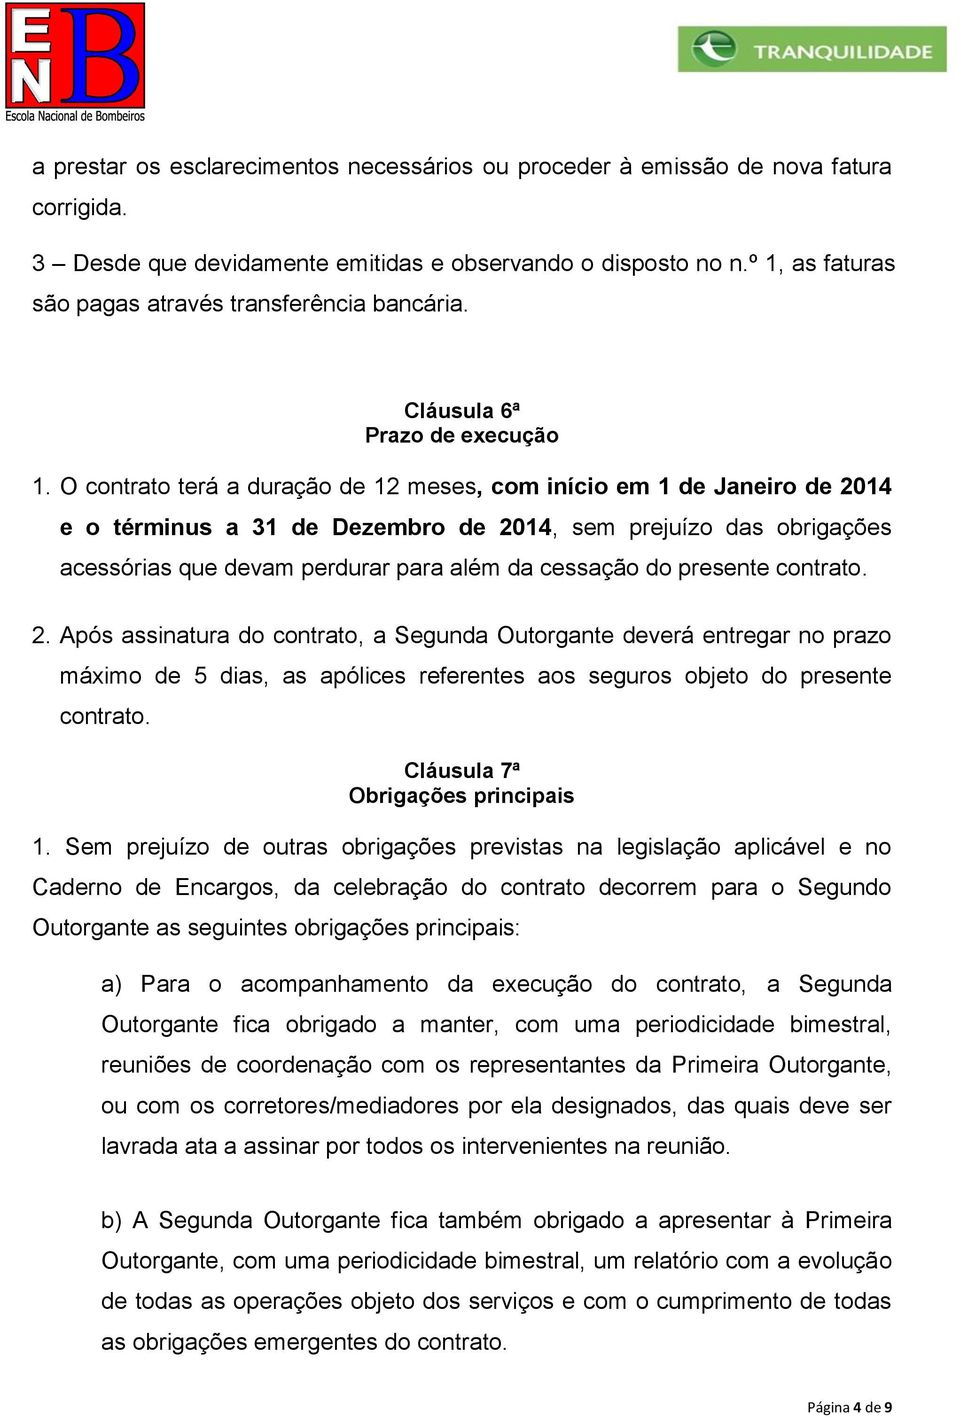 O contrato terá a duração de 12 meses, com início em 1 de Janeiro de 2014 e o términus a 31 de Dezembro de 2014, sem prejuízo das obrigações acessórias que devam perdurar para além da cessação do